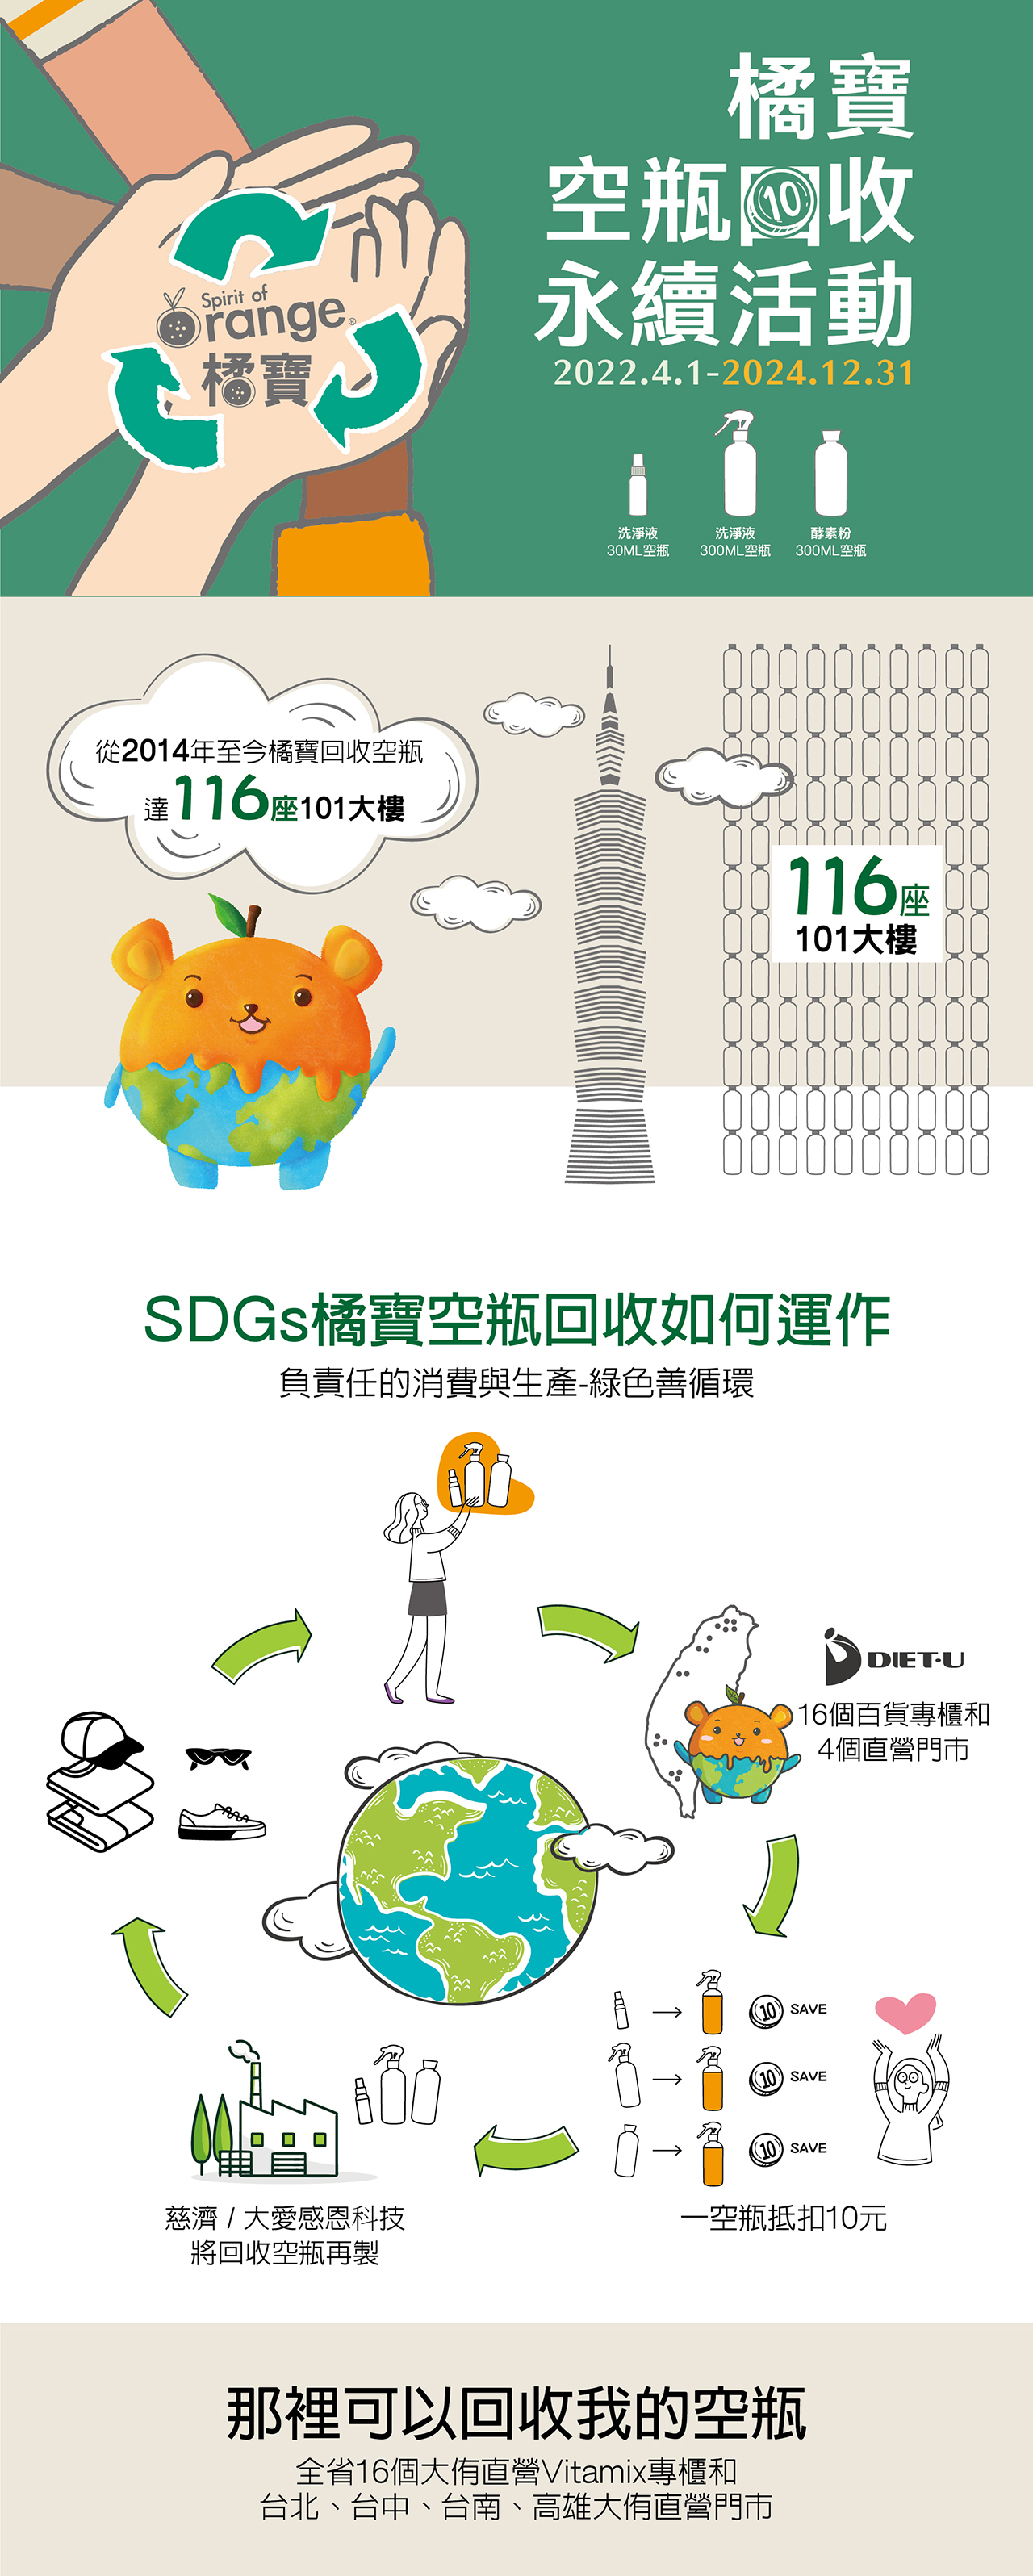 大侑-Dietu-橘寶-洗淨液-空瓶-回收-愛地球-折扣-永續-環保-SDGS-ESG